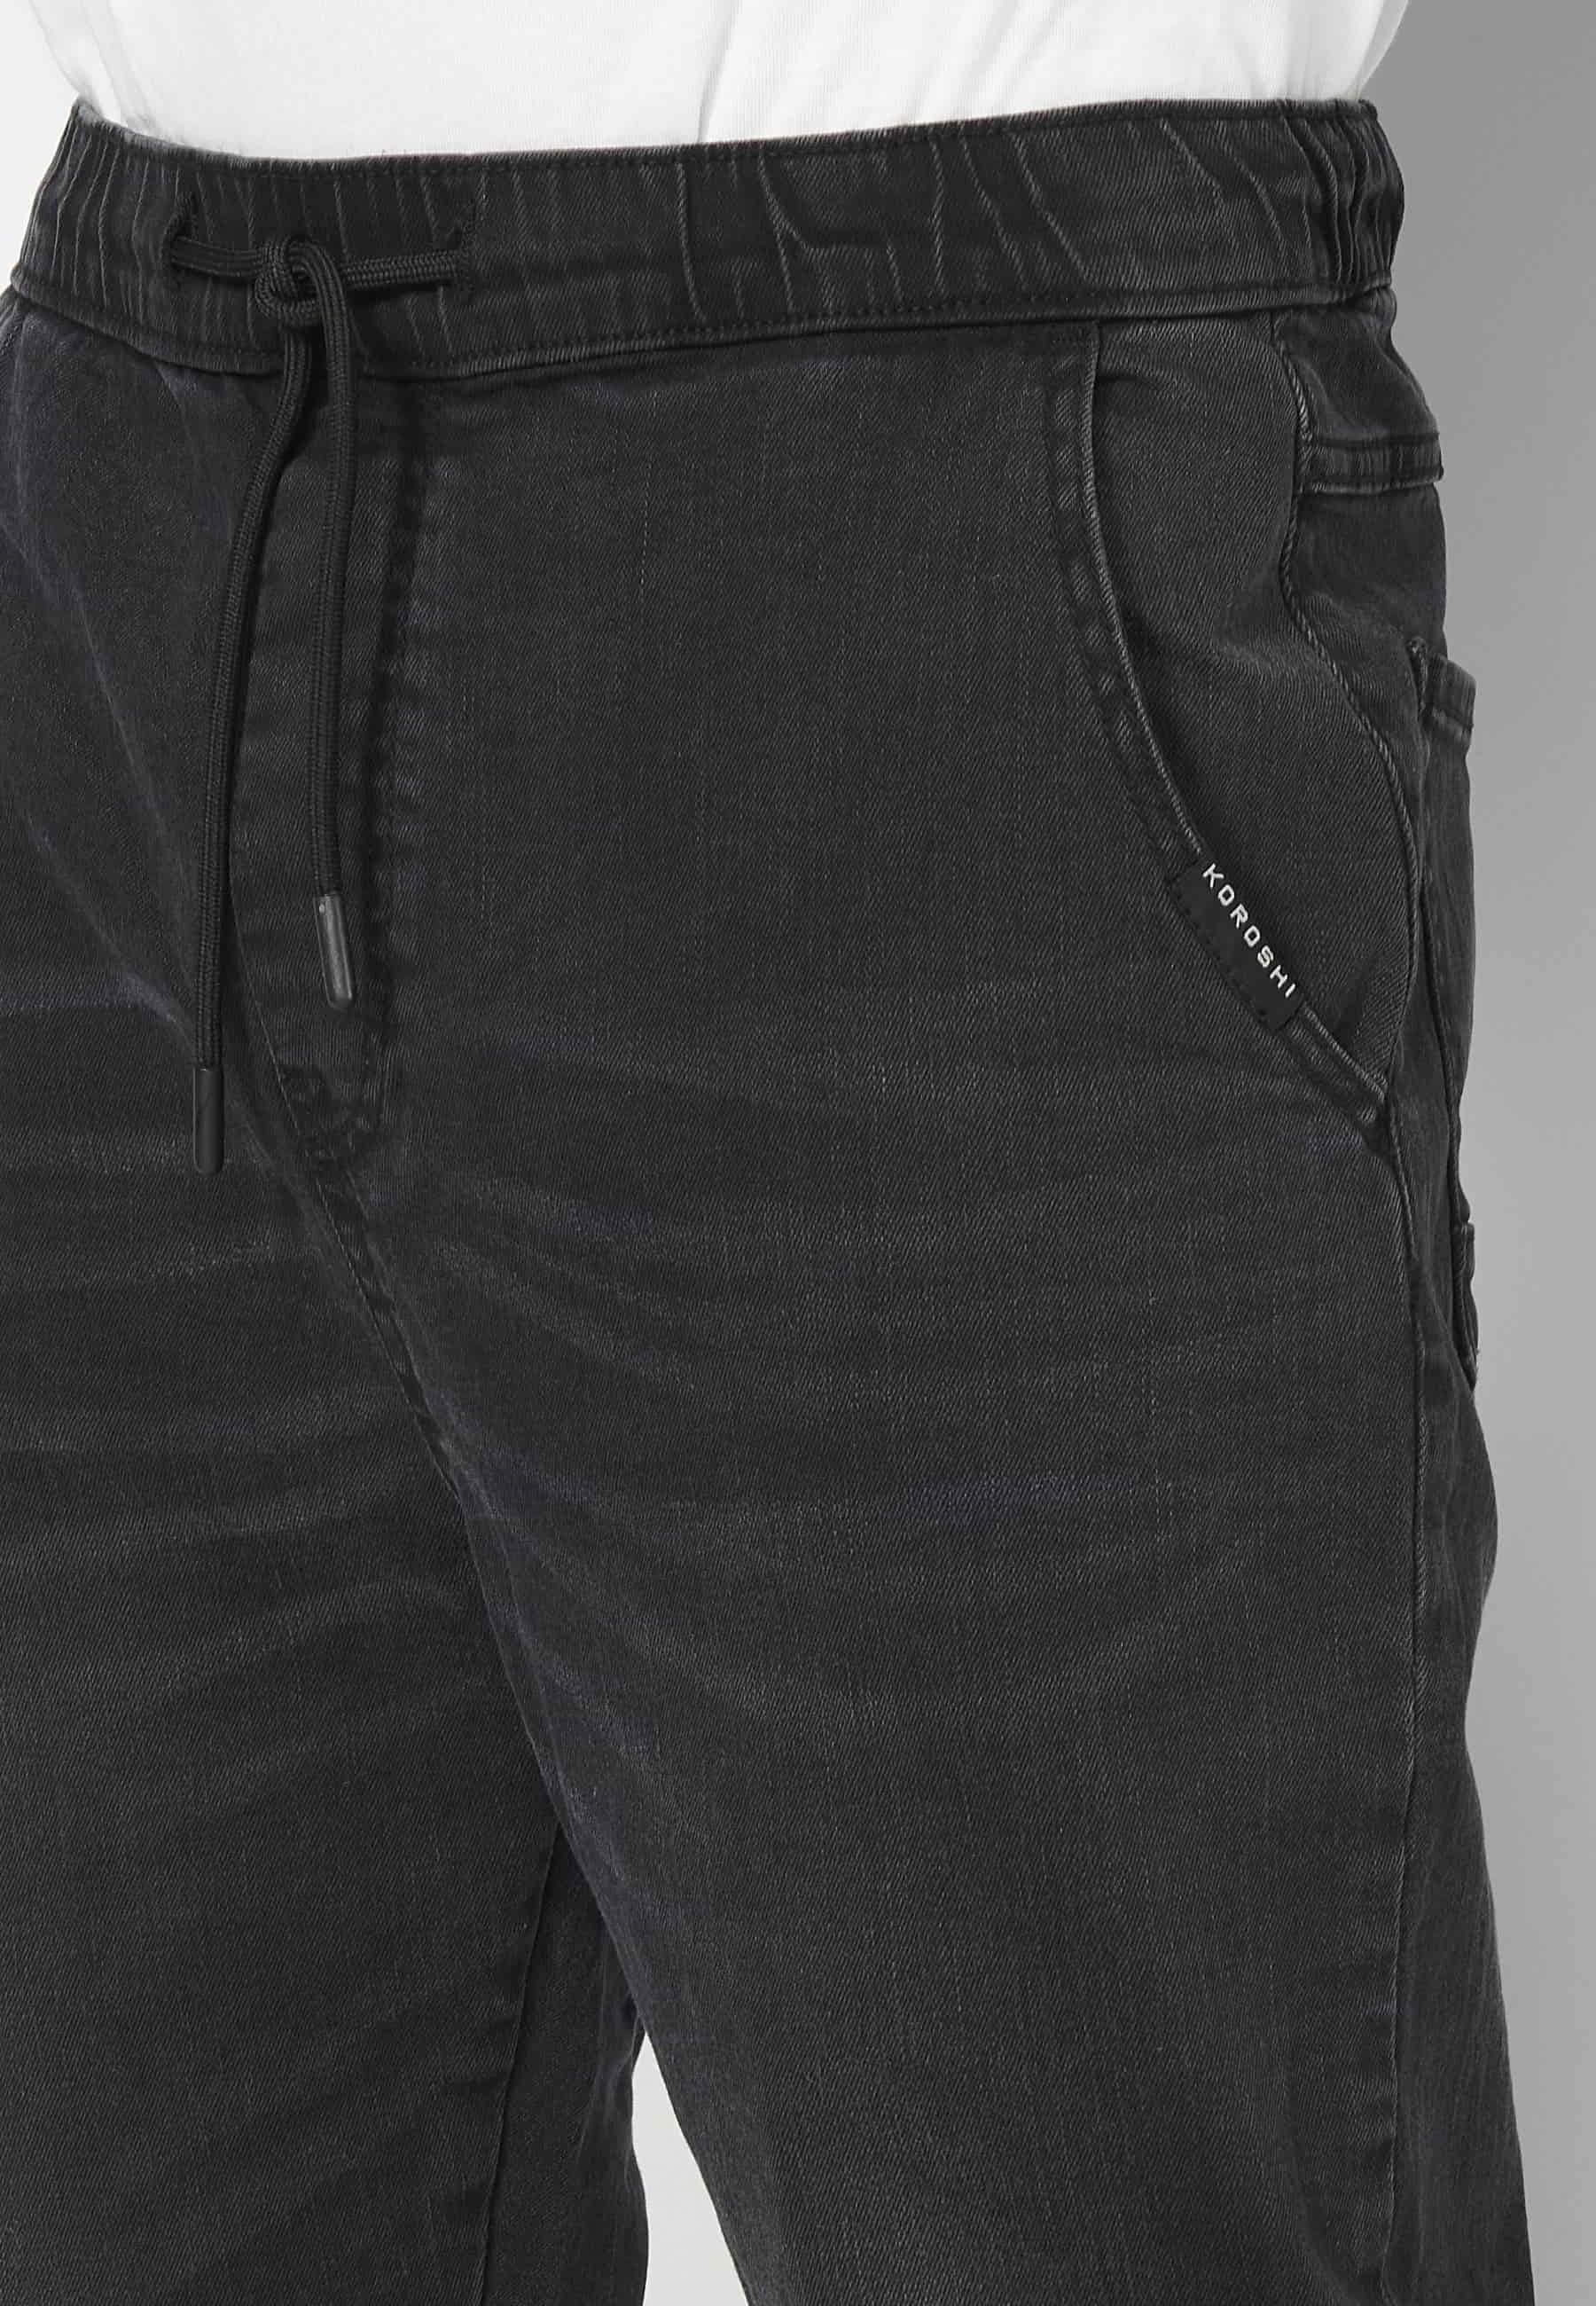 Pantalón Deportivo largo jogger cintura elástica color Negro para Hombre 5